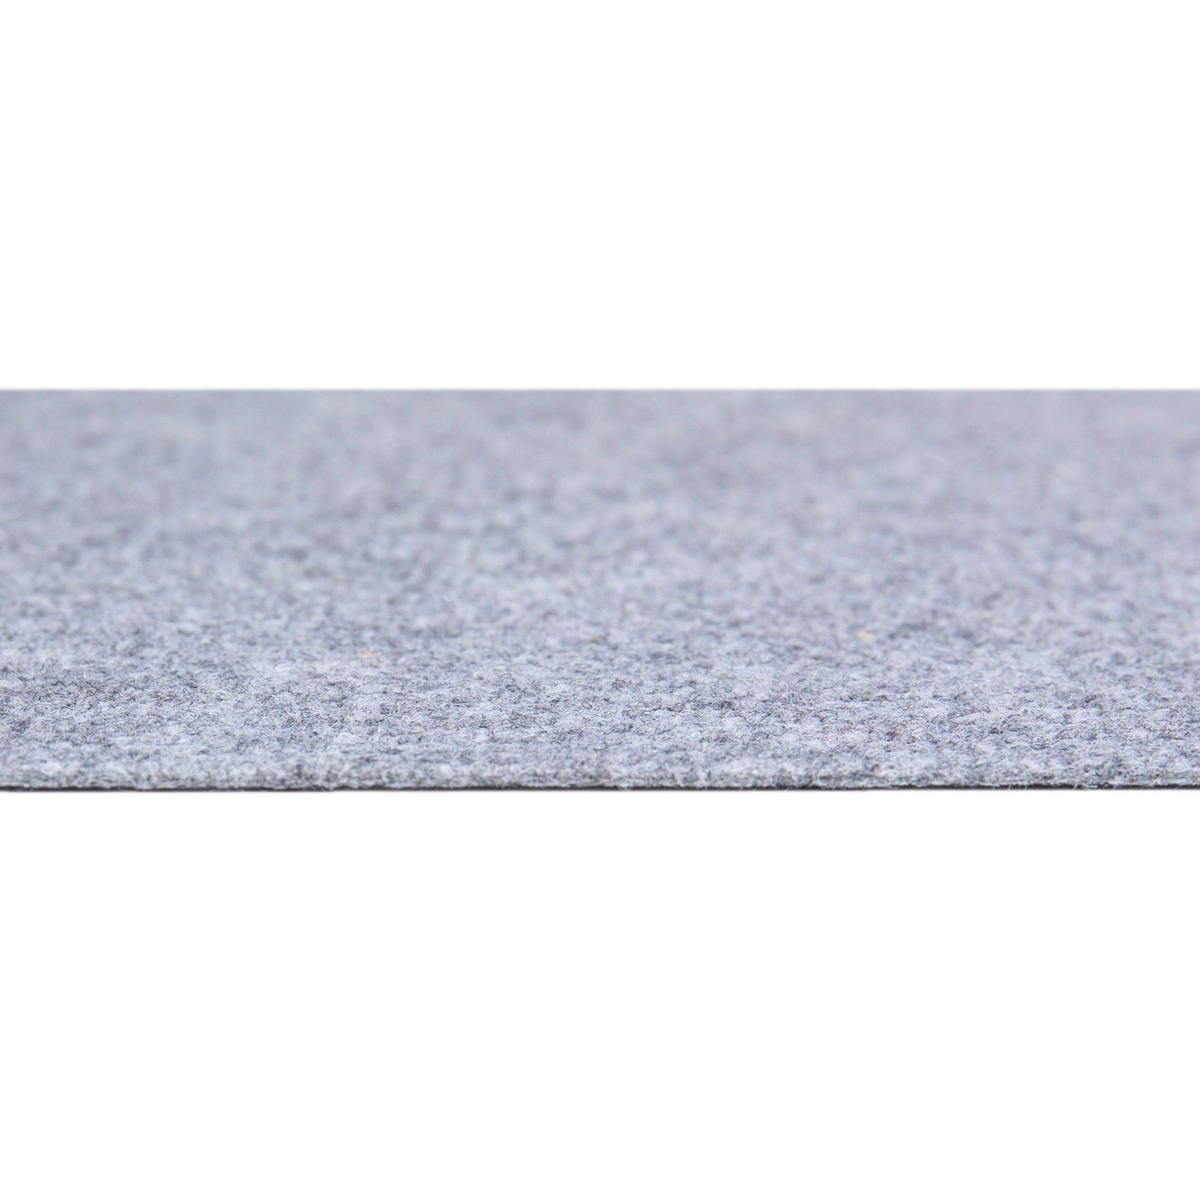 andiamo Teppichboden Milo - einfach zu verlegen - Auslegware Teppichboden -  Meterware Bodenbelag in feiner Rippenstruktur - mit Trittschalldämmung -  leicht zu reinigen 200 x 500 cm Grau : : Baumarkt